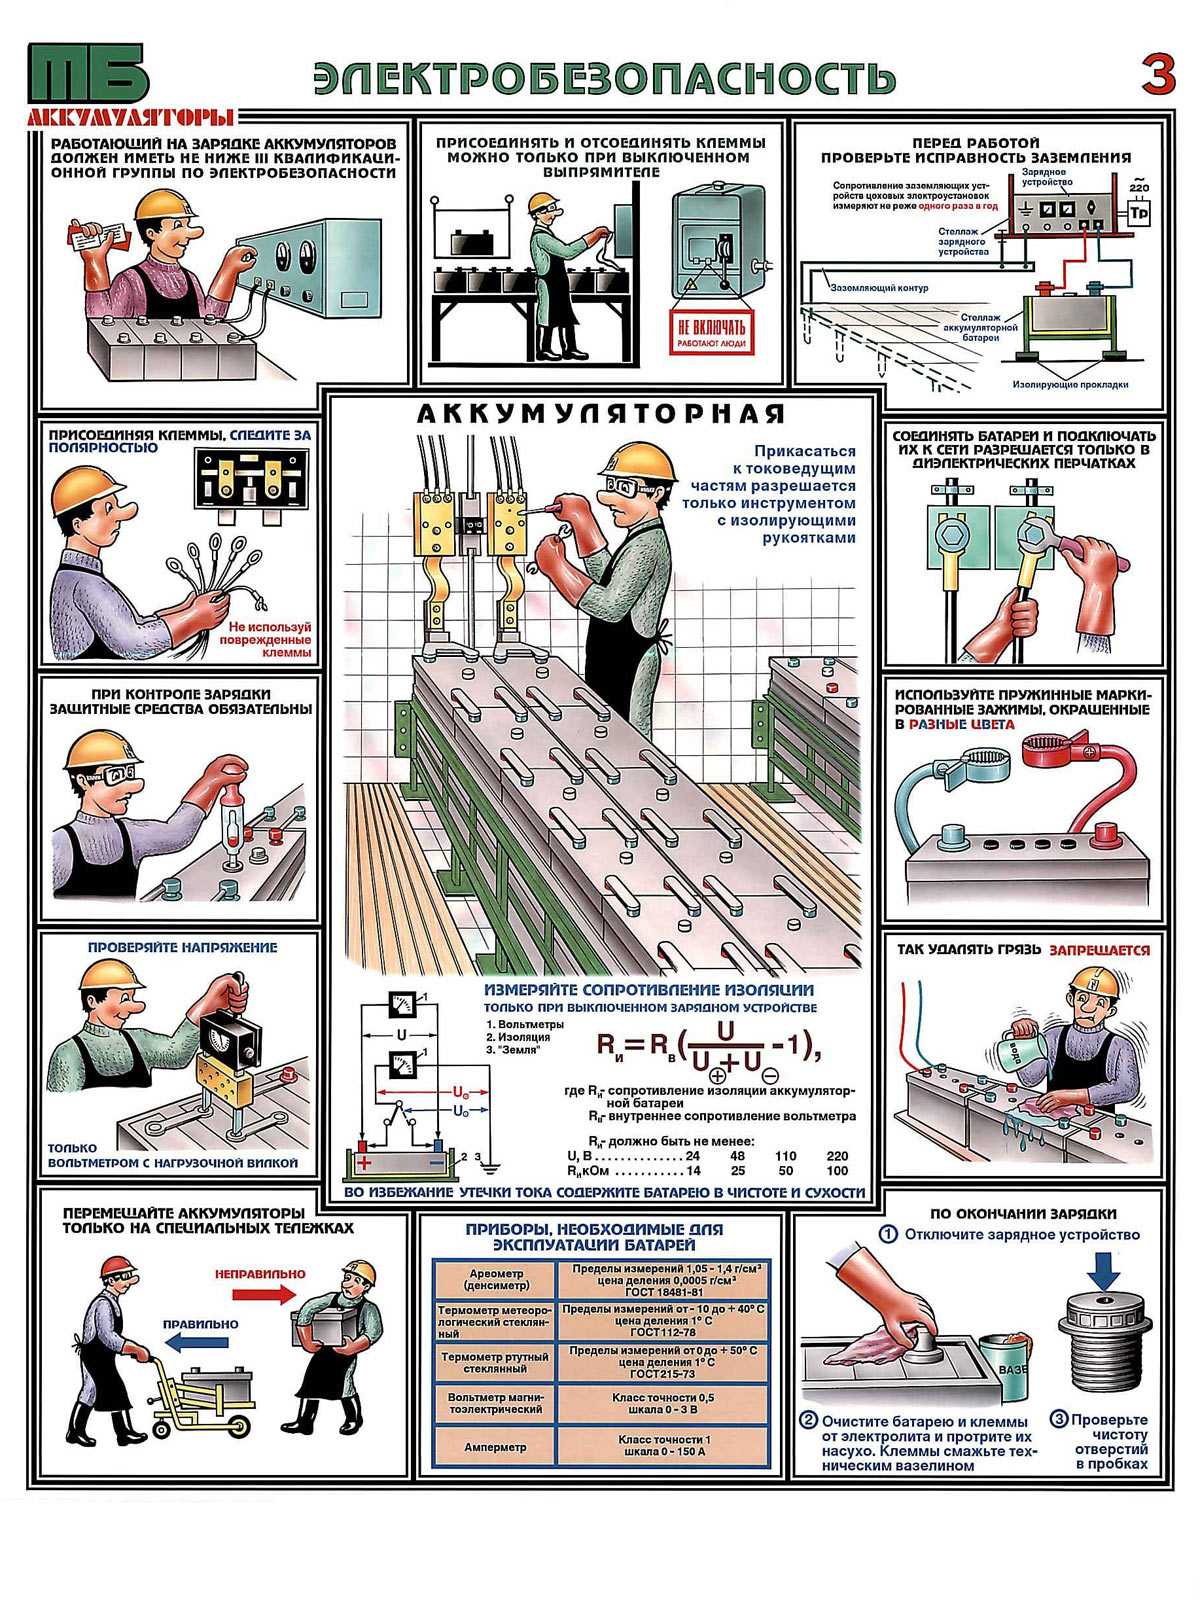 Электробезопасность на производстве: определение и общие требования к технике безопасности, организация обеспечения охраны труда на предприятии, в офисе